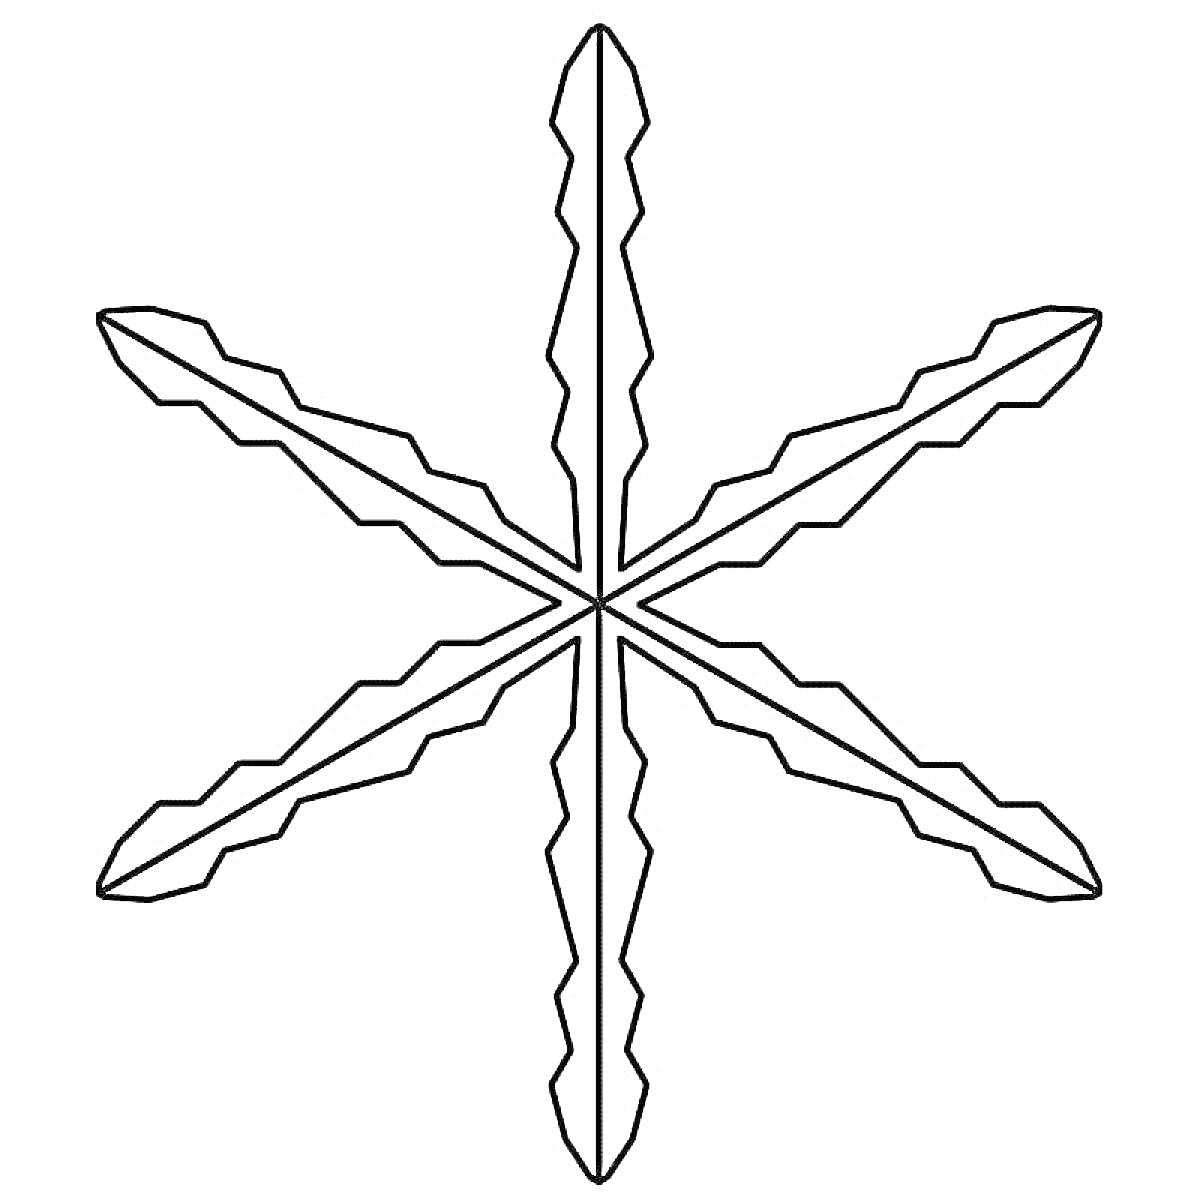 Раскраска Снежинка с шестью ветвями и зазубринами